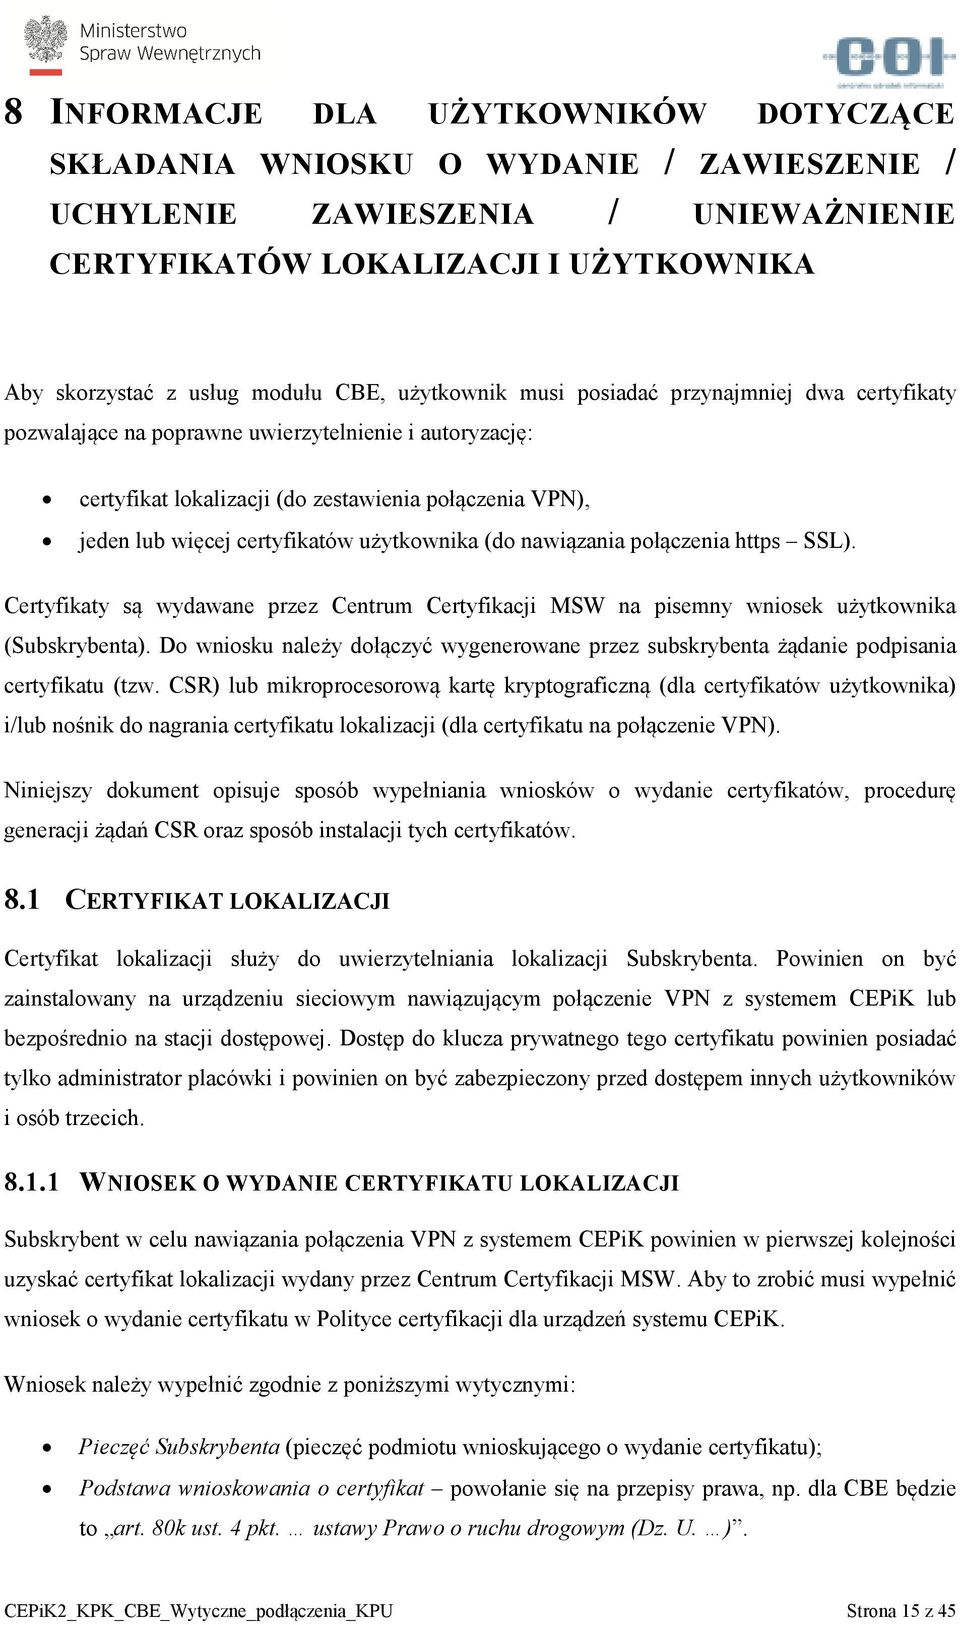 użytkownika (do nawiązania połączenia https SSL). Certyfikaty są wydawane przez Centrum Certyfikacji MSW na pisemny wniosek użytkownika (Subskrybenta).